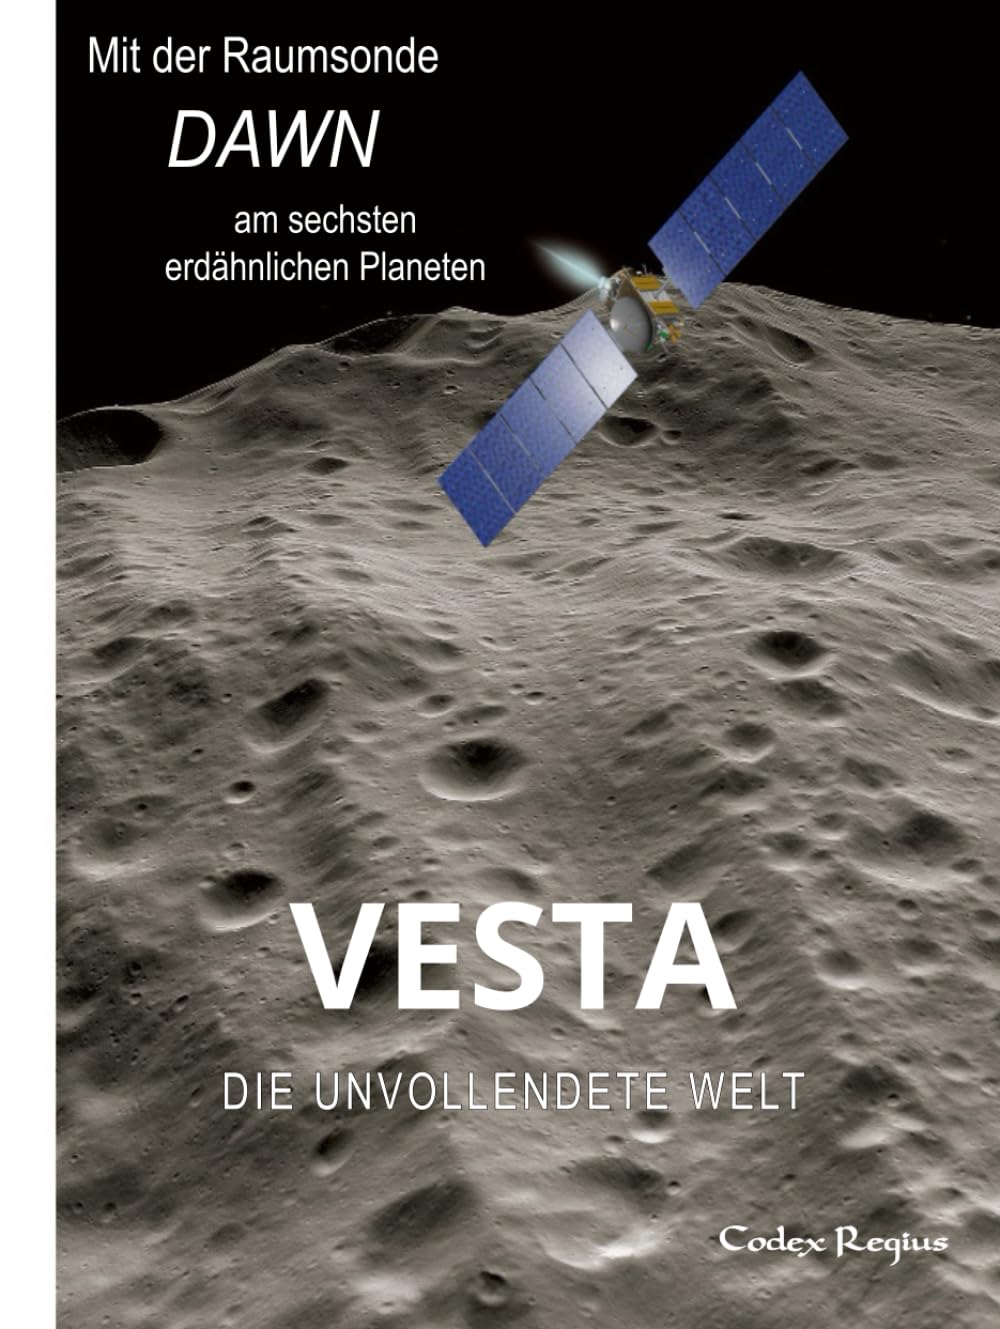 Vesta: Die unvollendete Welt: Mit der Raumsonde Dawn am sechsten erdähnlichen Planeten (Erforscher kleiner Welten)